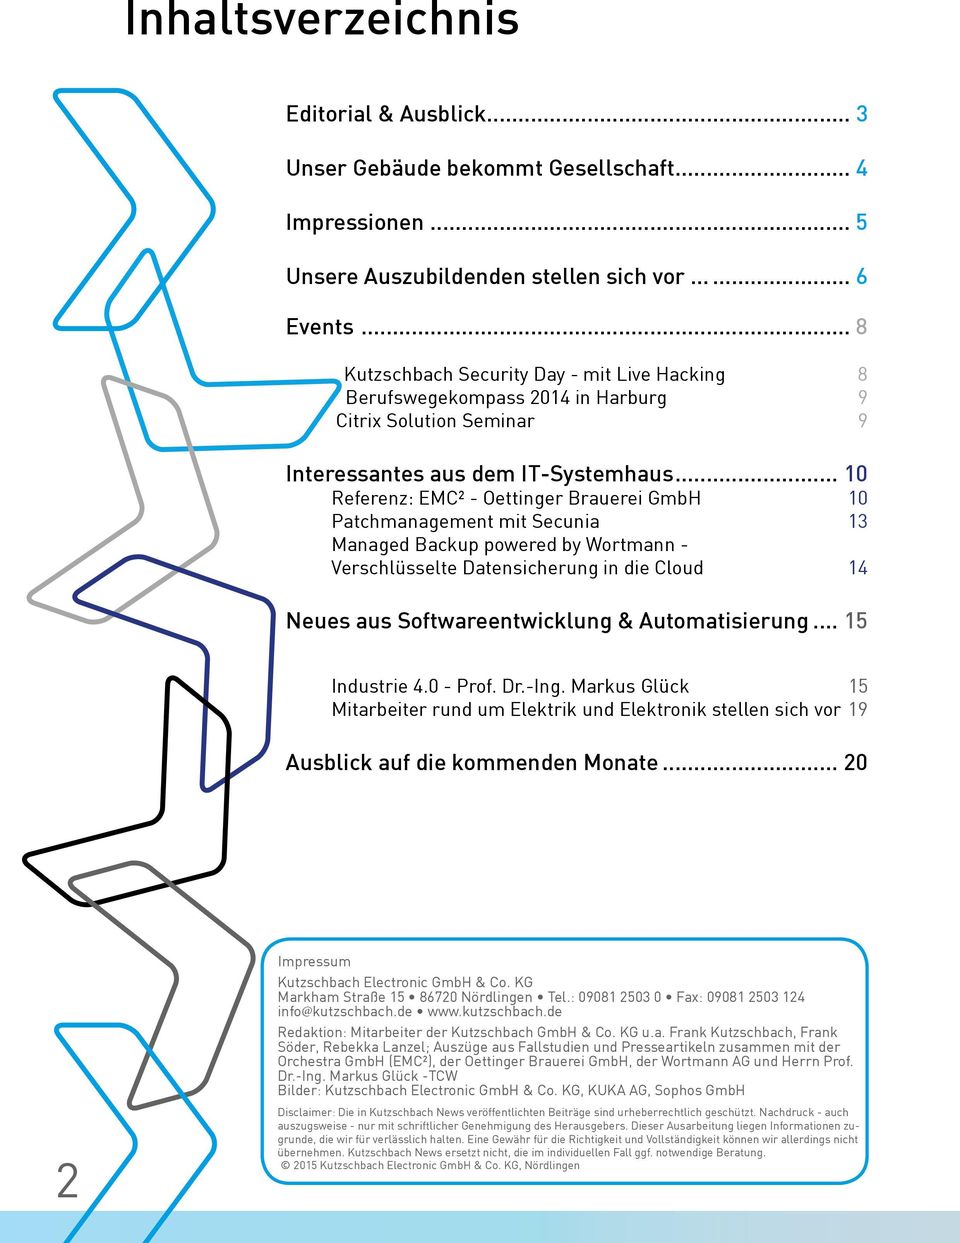 GmbH 10 Patchmanagement mit Secunia 13 Managed Backup powered by Wortmann - Verschlüsselte Datensicherung in die Cloud 14 Neues aus Softwareentwicklung & Automatisierung 15 Industrie 4.0 - Prof. Dr.